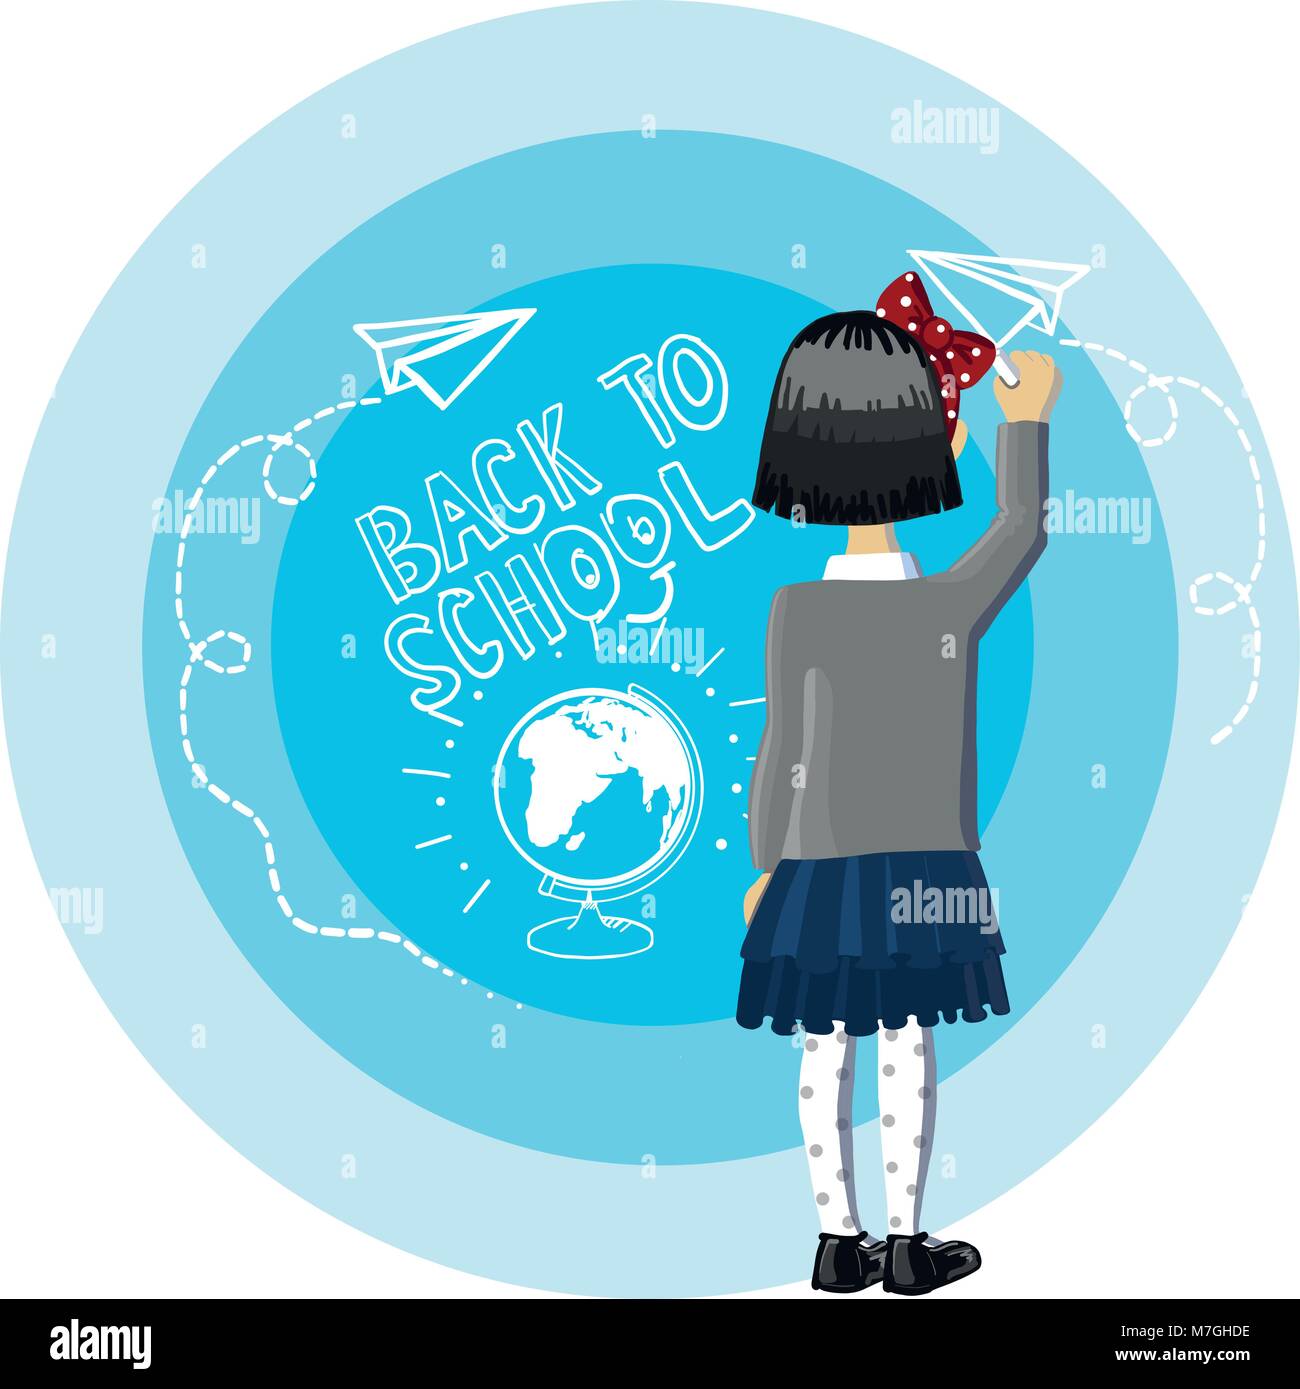 Petite fille cheveux noirs se tiennent près de fond bleu, écriture et nautiques telles que la craie blanche, le retour à l'école, avion de papier dessin et globe avec de la craie sur un tableau noir Illustration de Vecteur